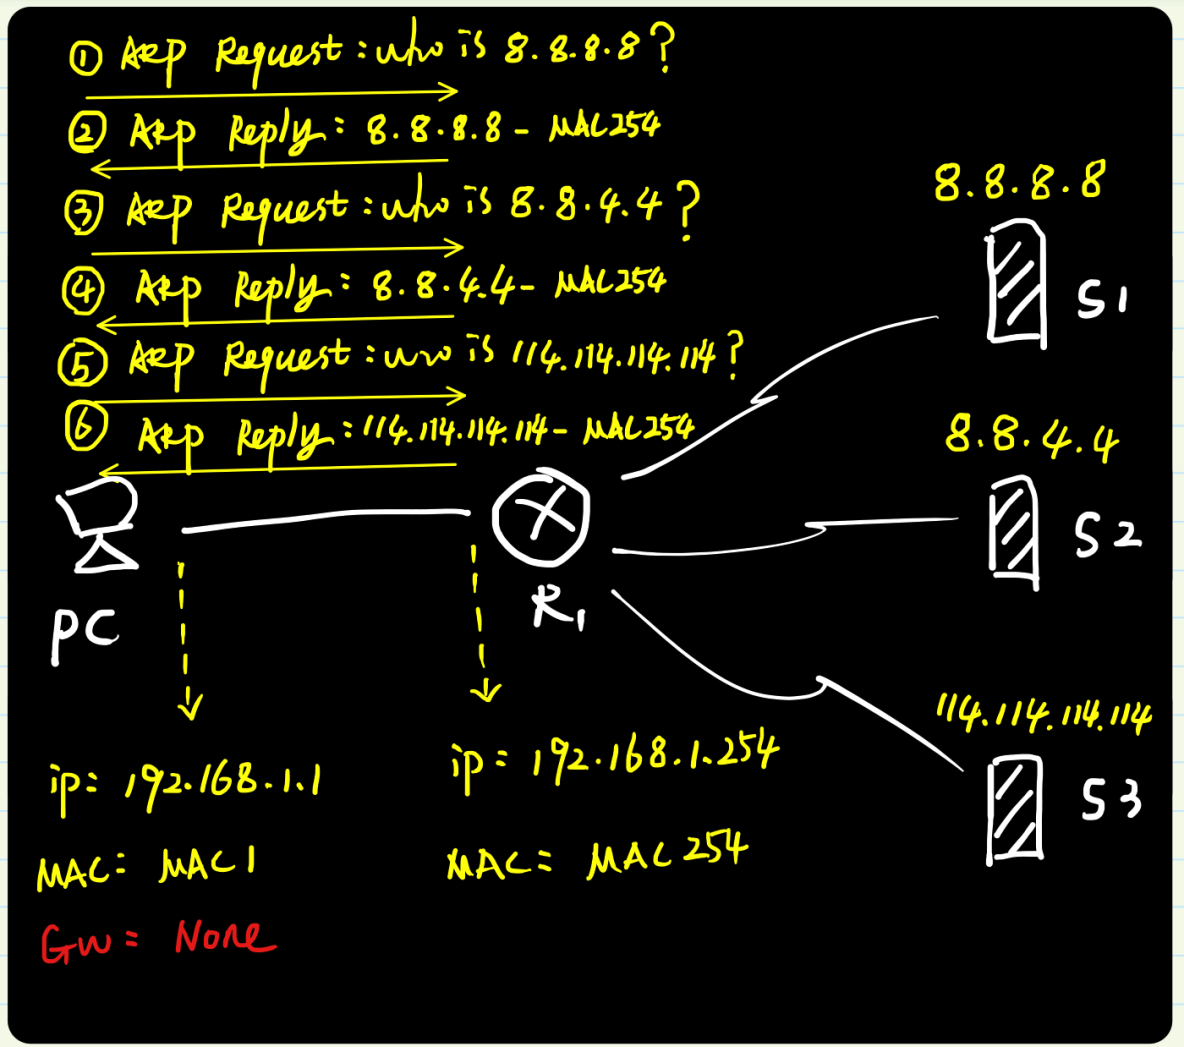 图解ARP协议（四）代理ARP原理与实践（“善意的欺骗”）_TCP/IP_09